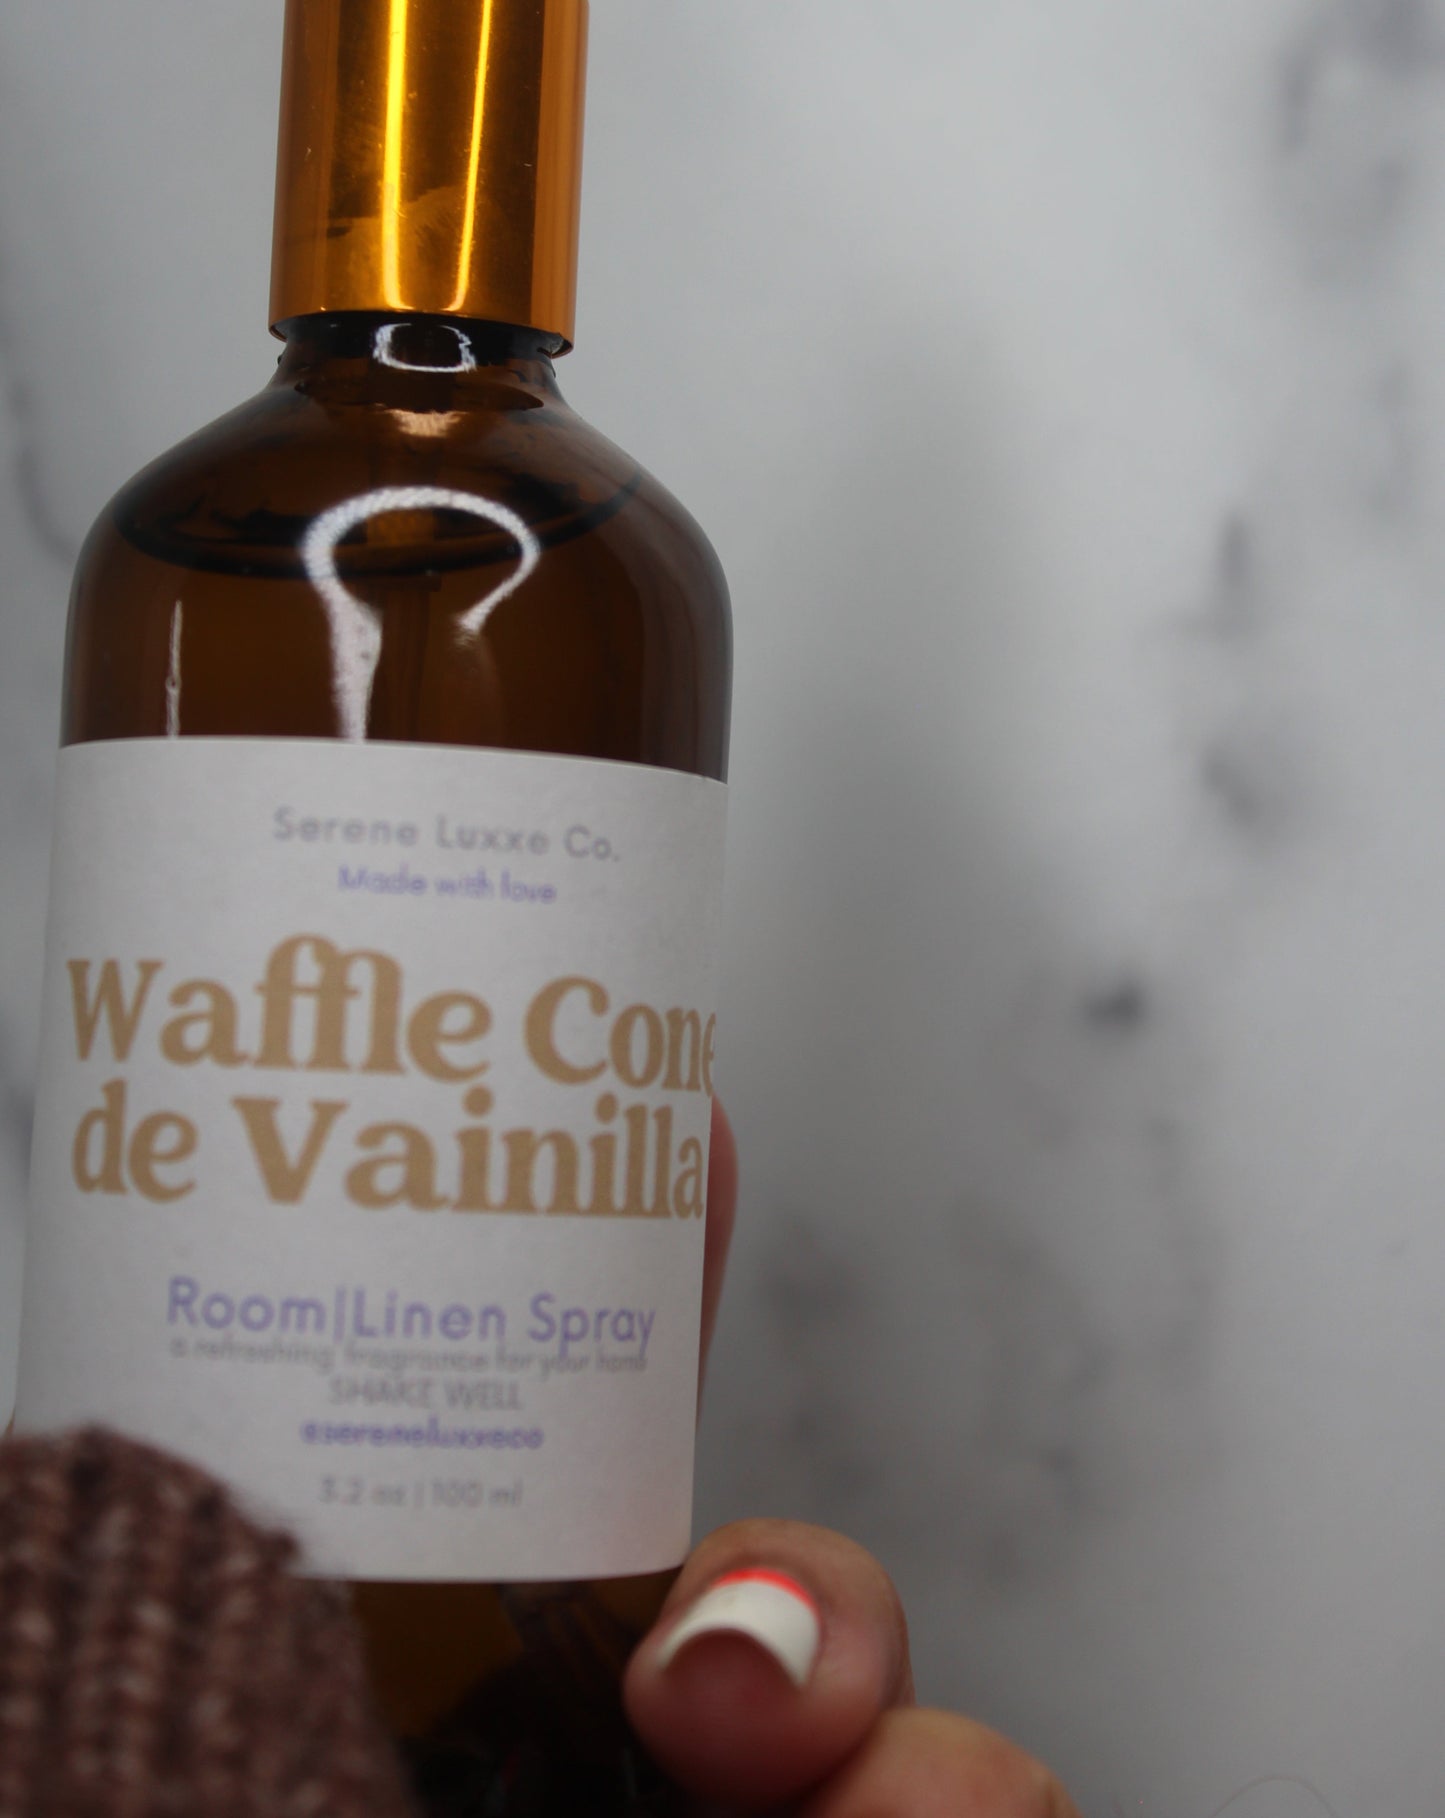 Waffle Cone De Vainilla Room Spray